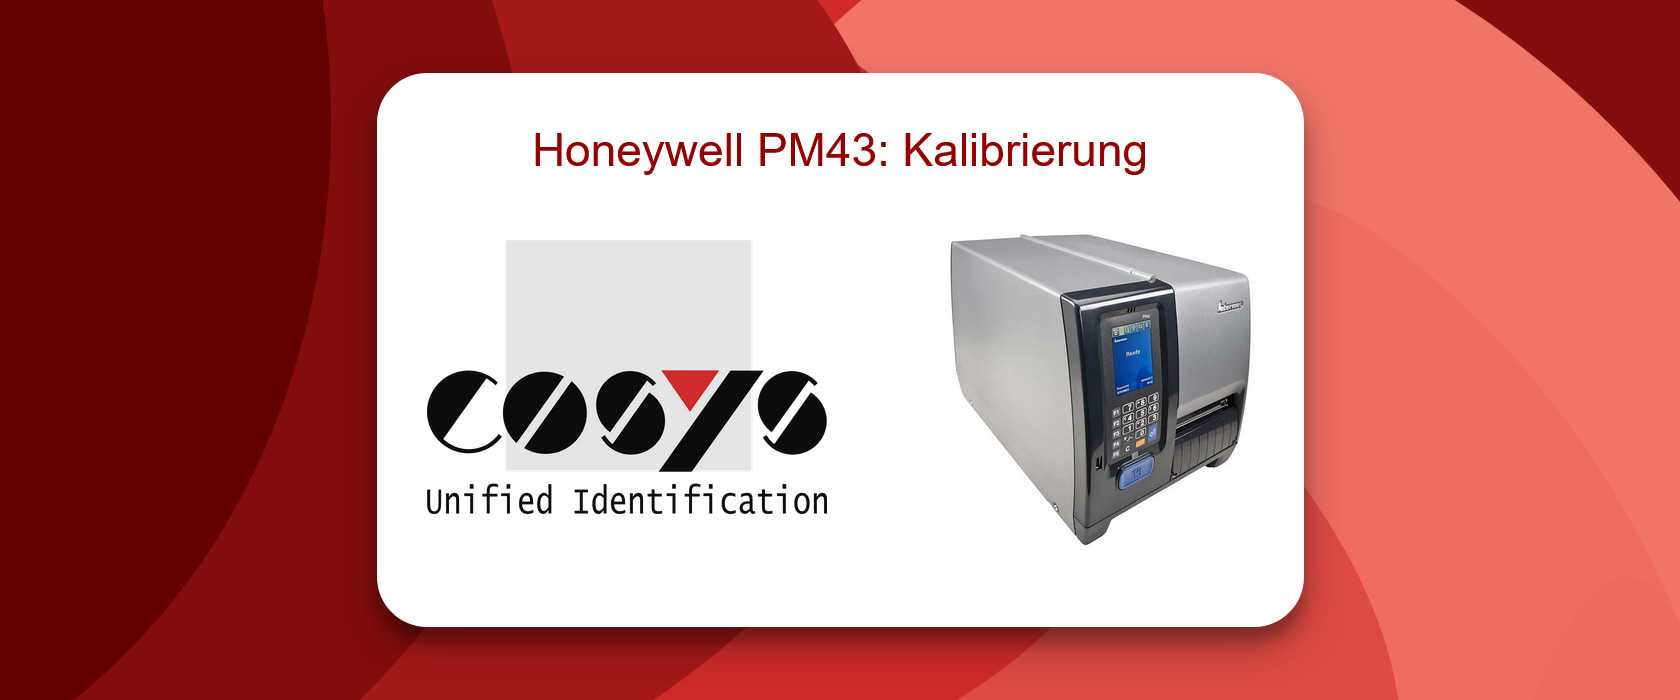 Kalibrierung des Honeywell PM43